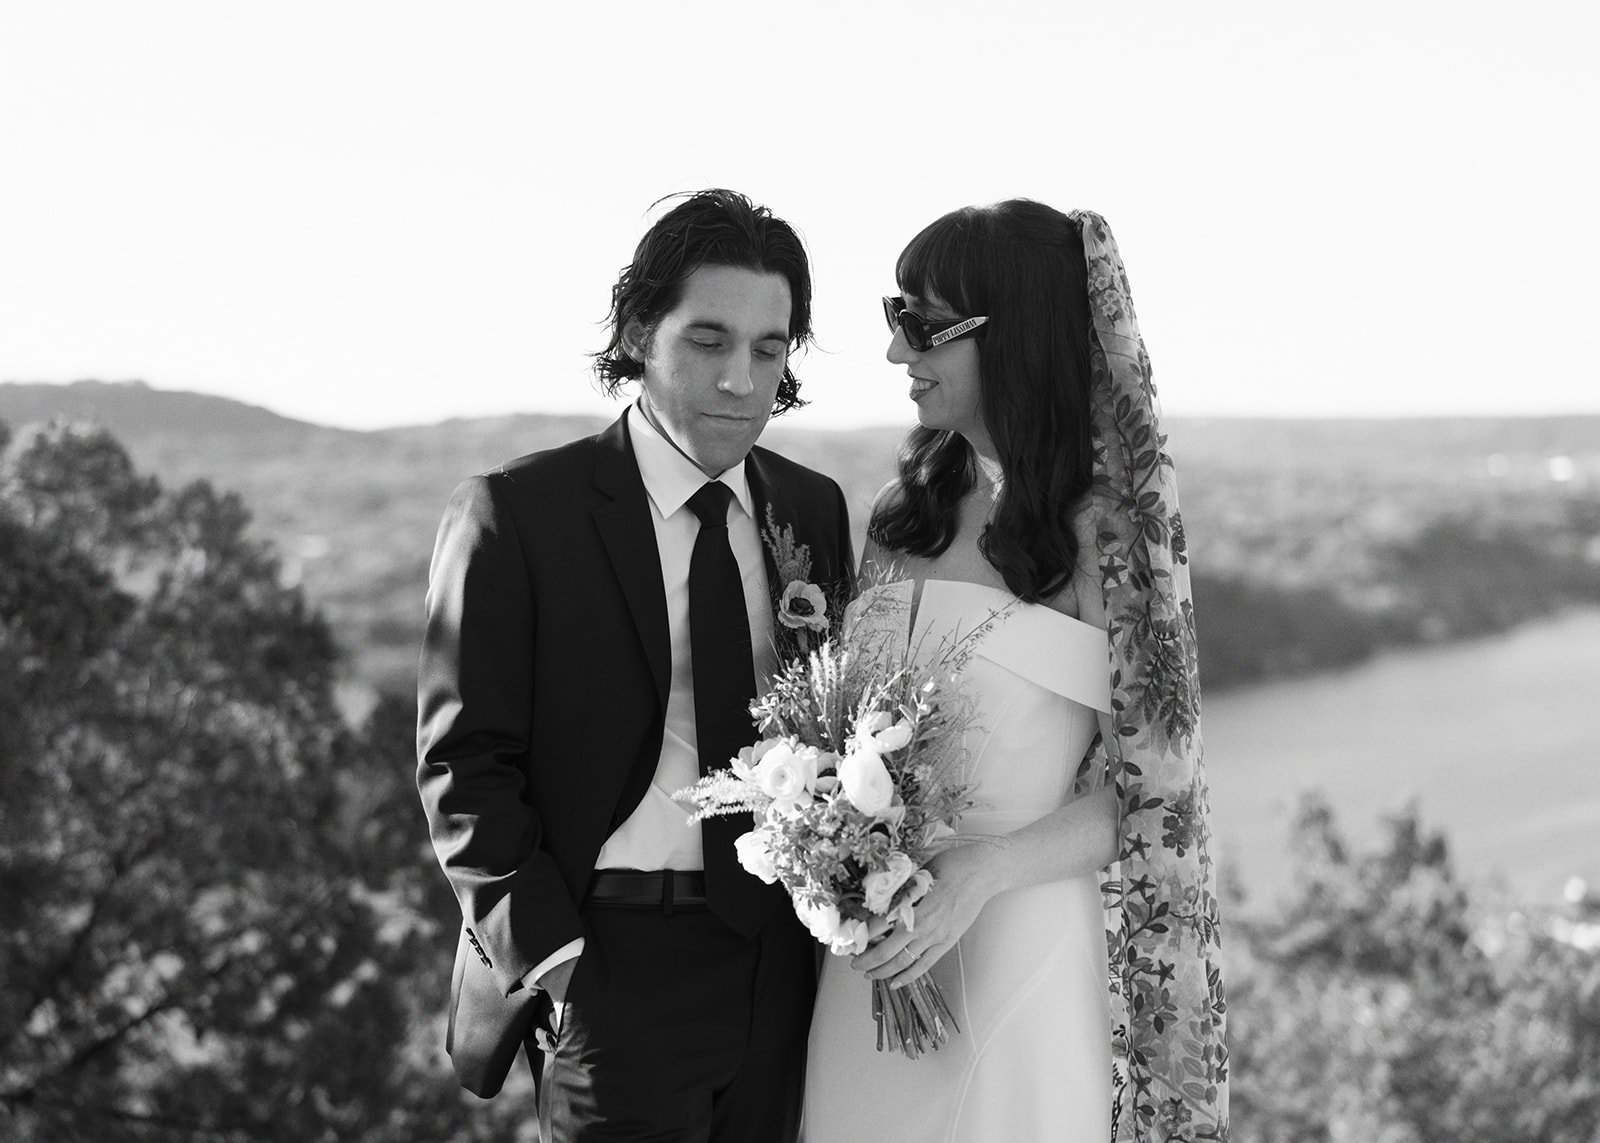 Best-Austin-Wedding-Photographers-Elopement-Film-35mm-Asheville-Santa-Barbara-Laguna-Gloria-35.jpg